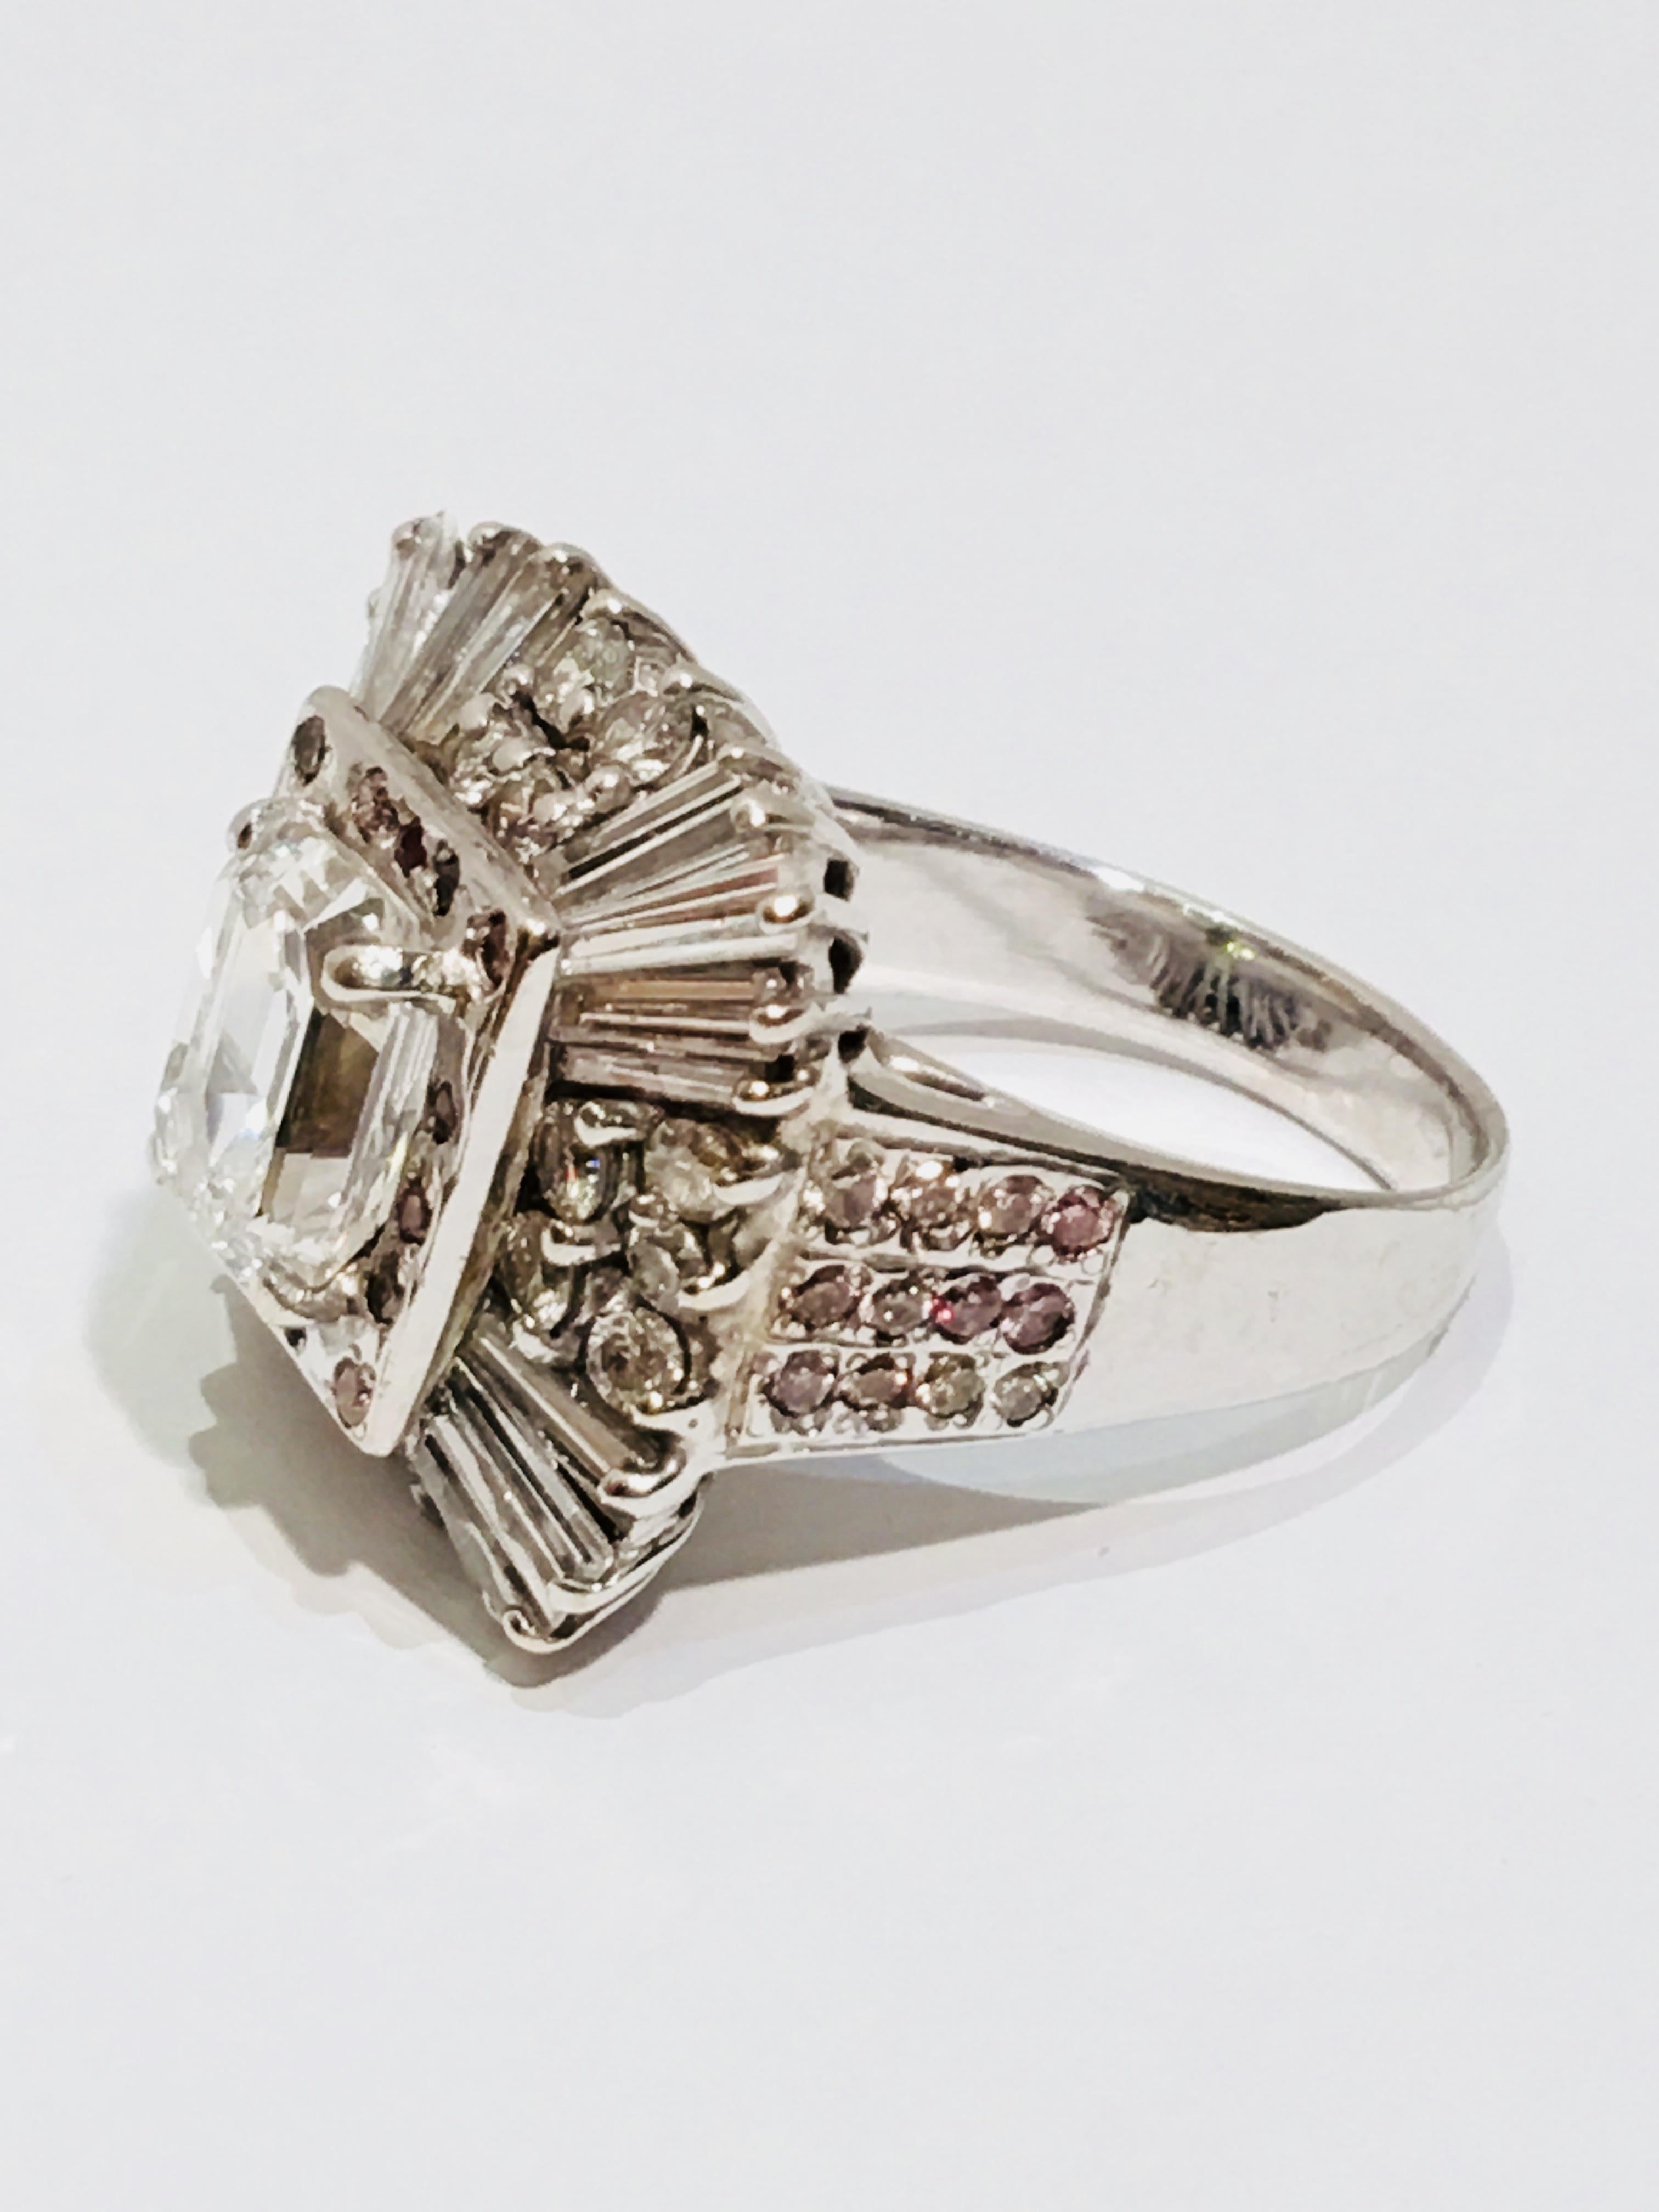 Unglaublicher Ring mit einem GIA-zertifizierten 3-Karat-Diamanten mit Stufenschliff (Smaragdschliff) in der Mitte mit einer Reinheit von VVS1 und einer Farbe von D und 5,3 Karat umliegenden Diamanten, eingefasst in 18 Karat Weißgold.

GIA-Zertifikat